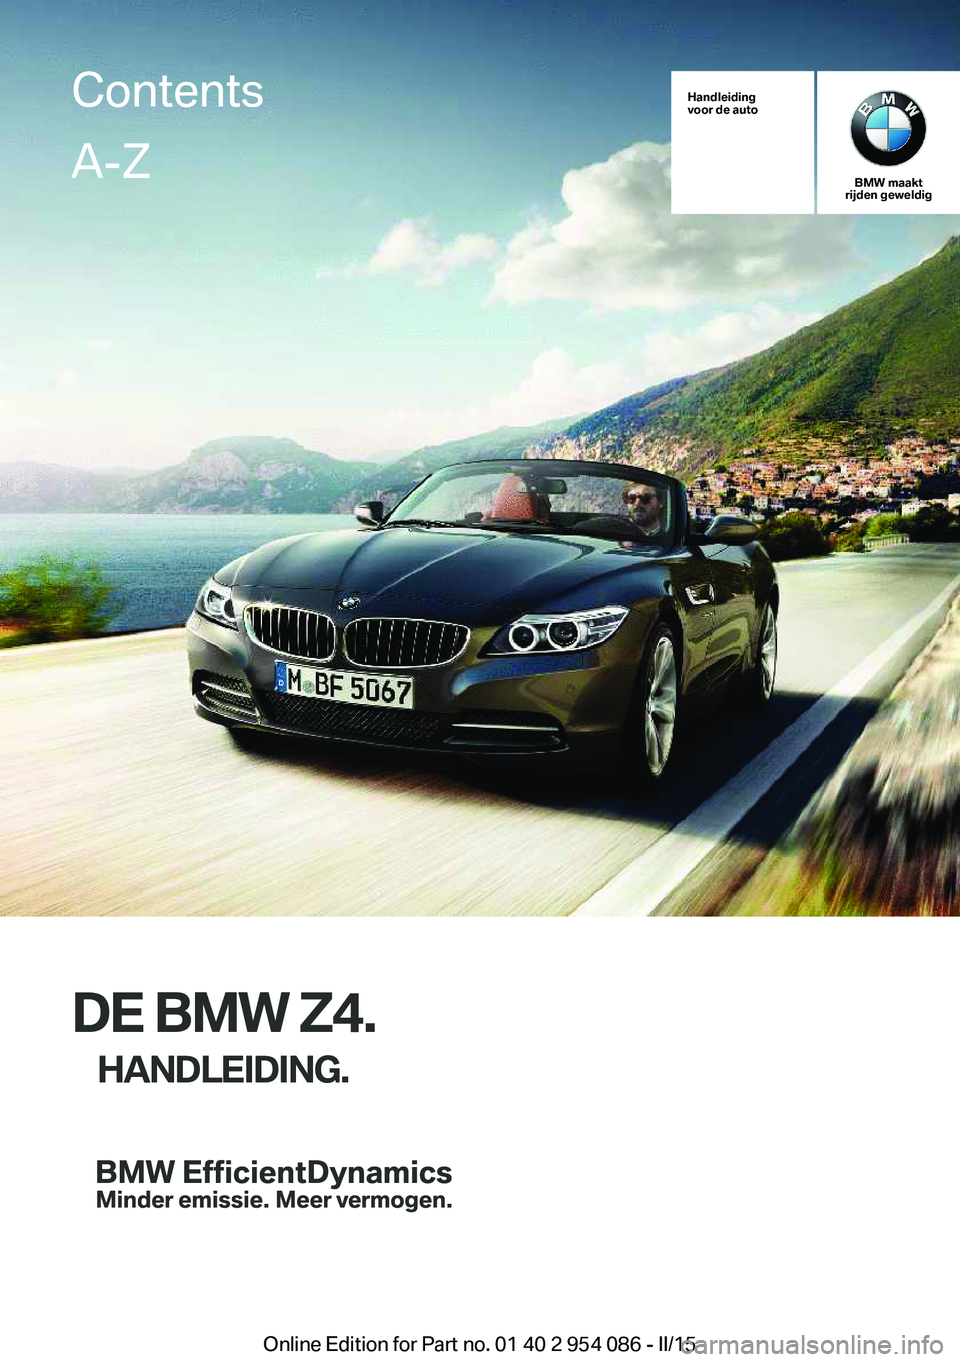 BMW Z4 2016  Instructieboekjes (in Dutch) Handleiding
voor de auto
BMW maakt
rijden geweldig
DE BMW Z4.
HANDLEIDING.
ContentsA-Z
Online Edition for Part no. 01 40 2 954 086 - II/15   